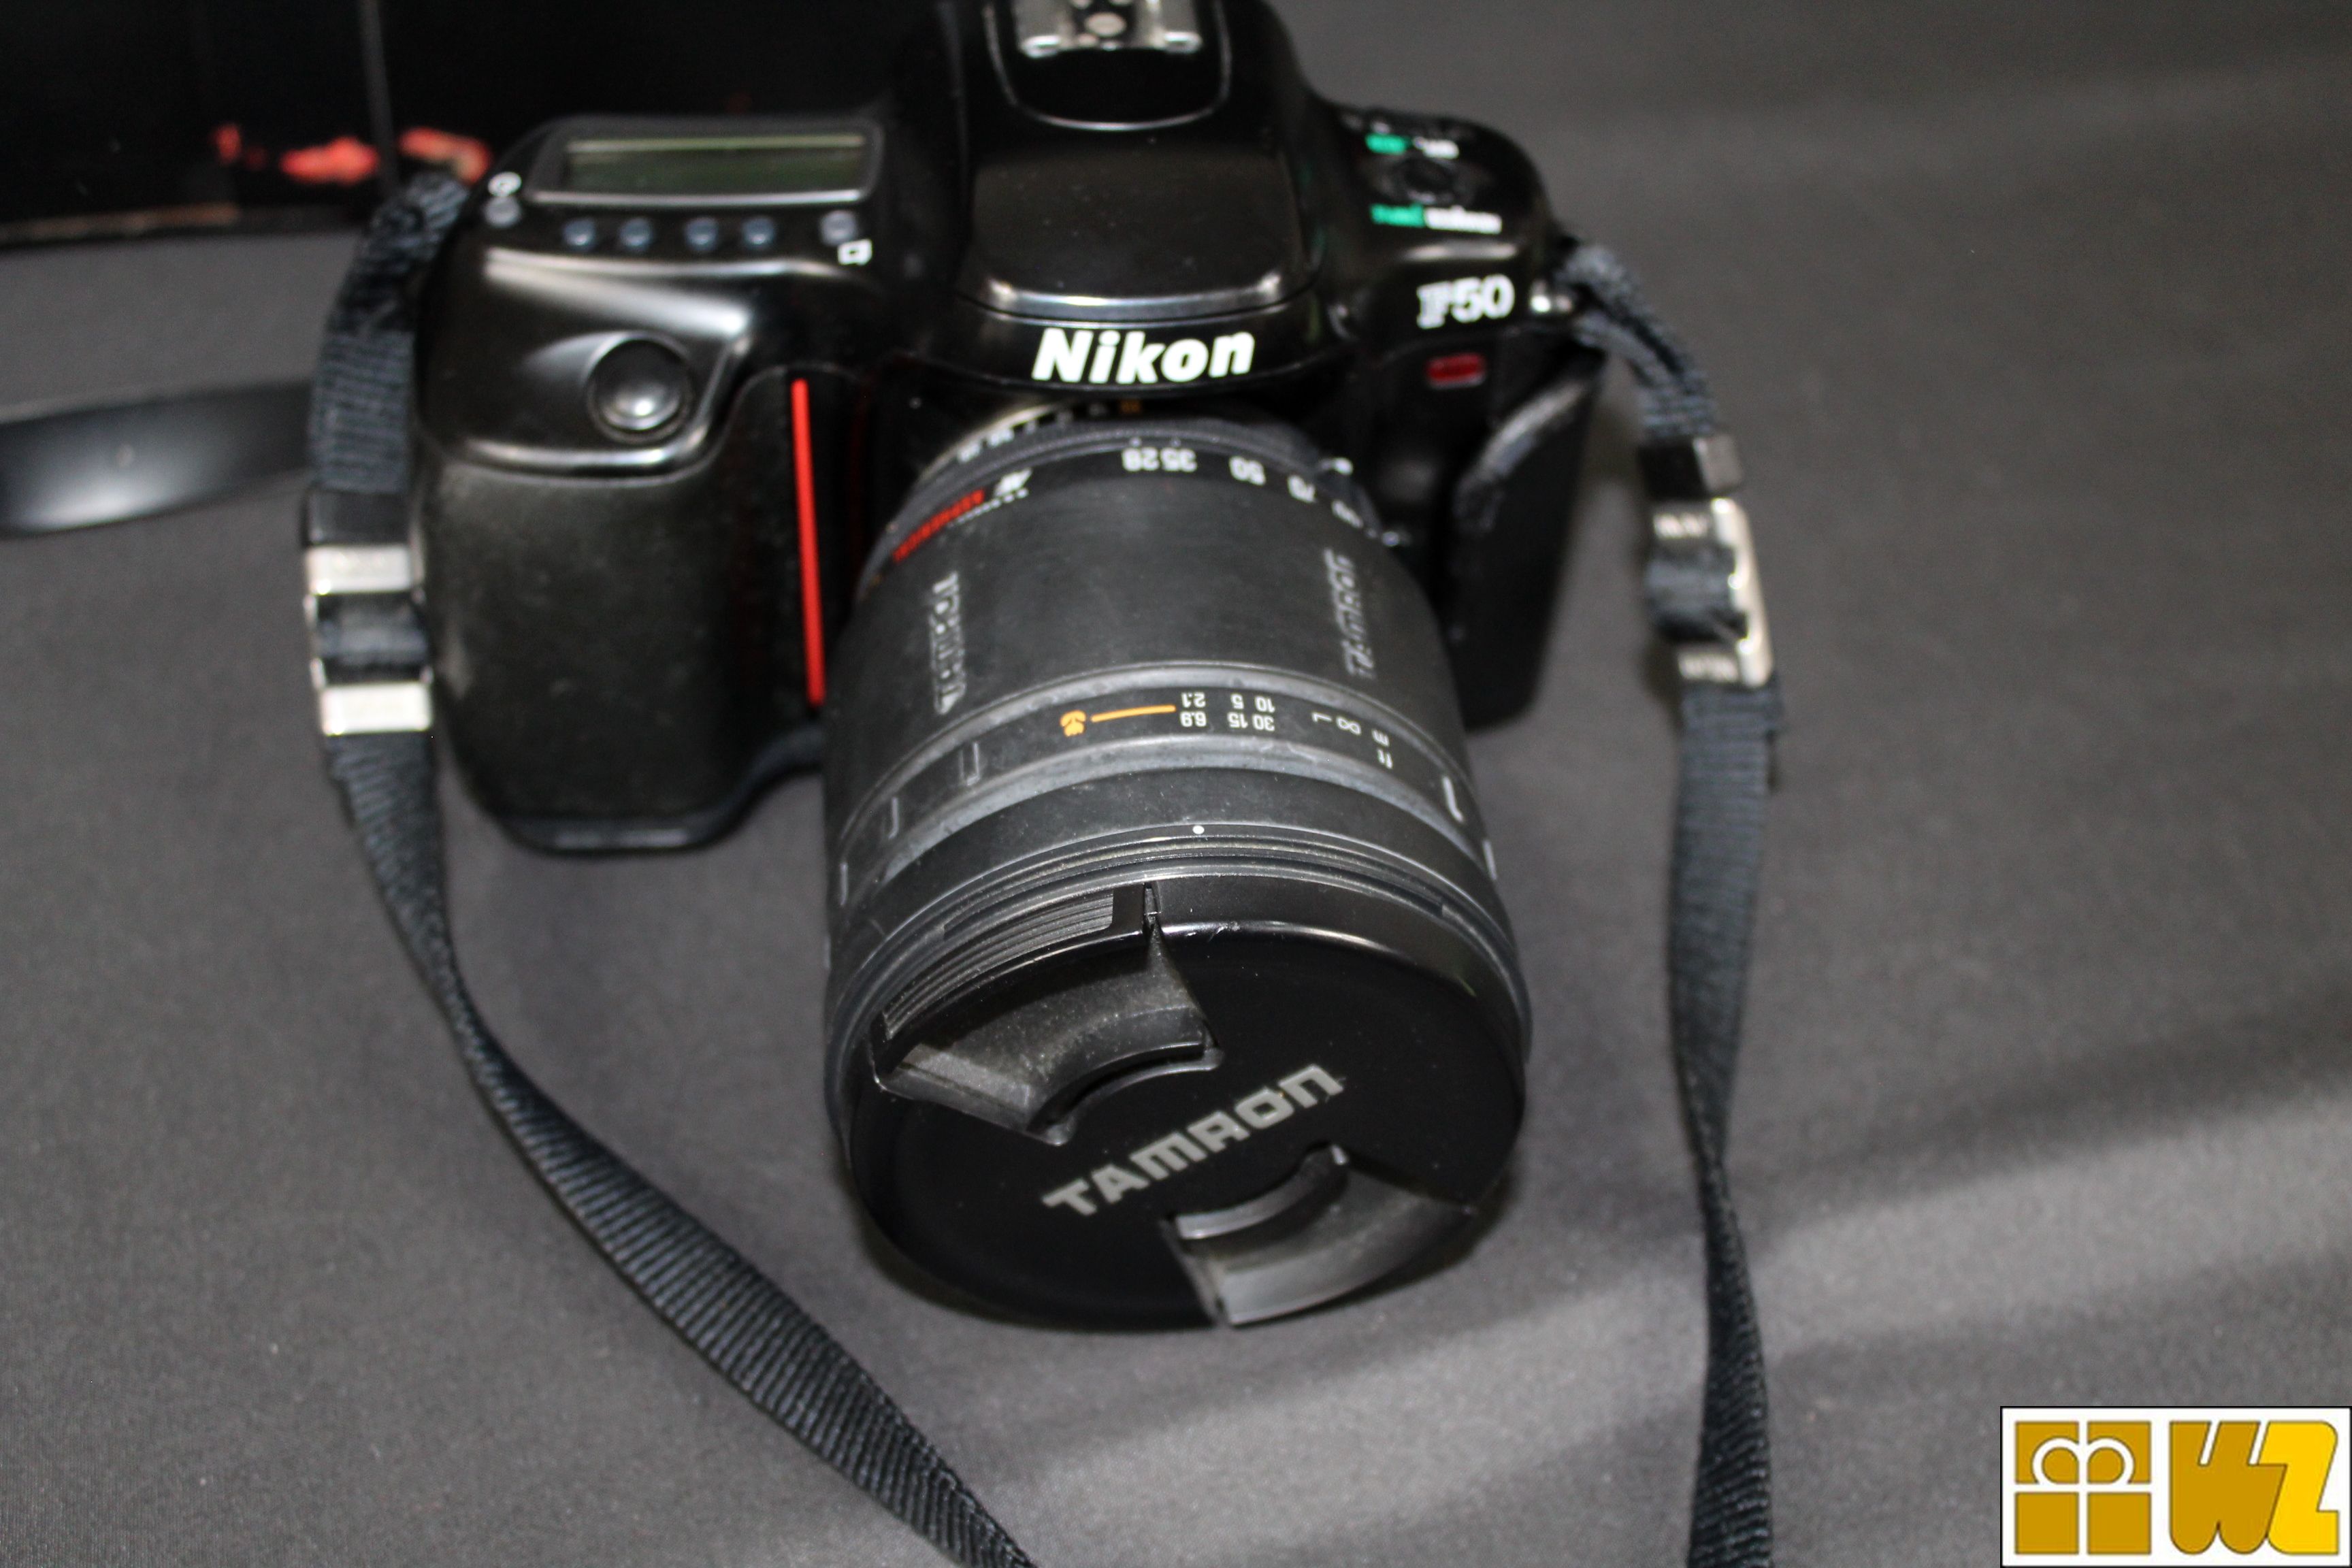 Nikon Analoge SLR Kamera F50 mit Tamron Objektiv AF Aspherical LD 28-200mm